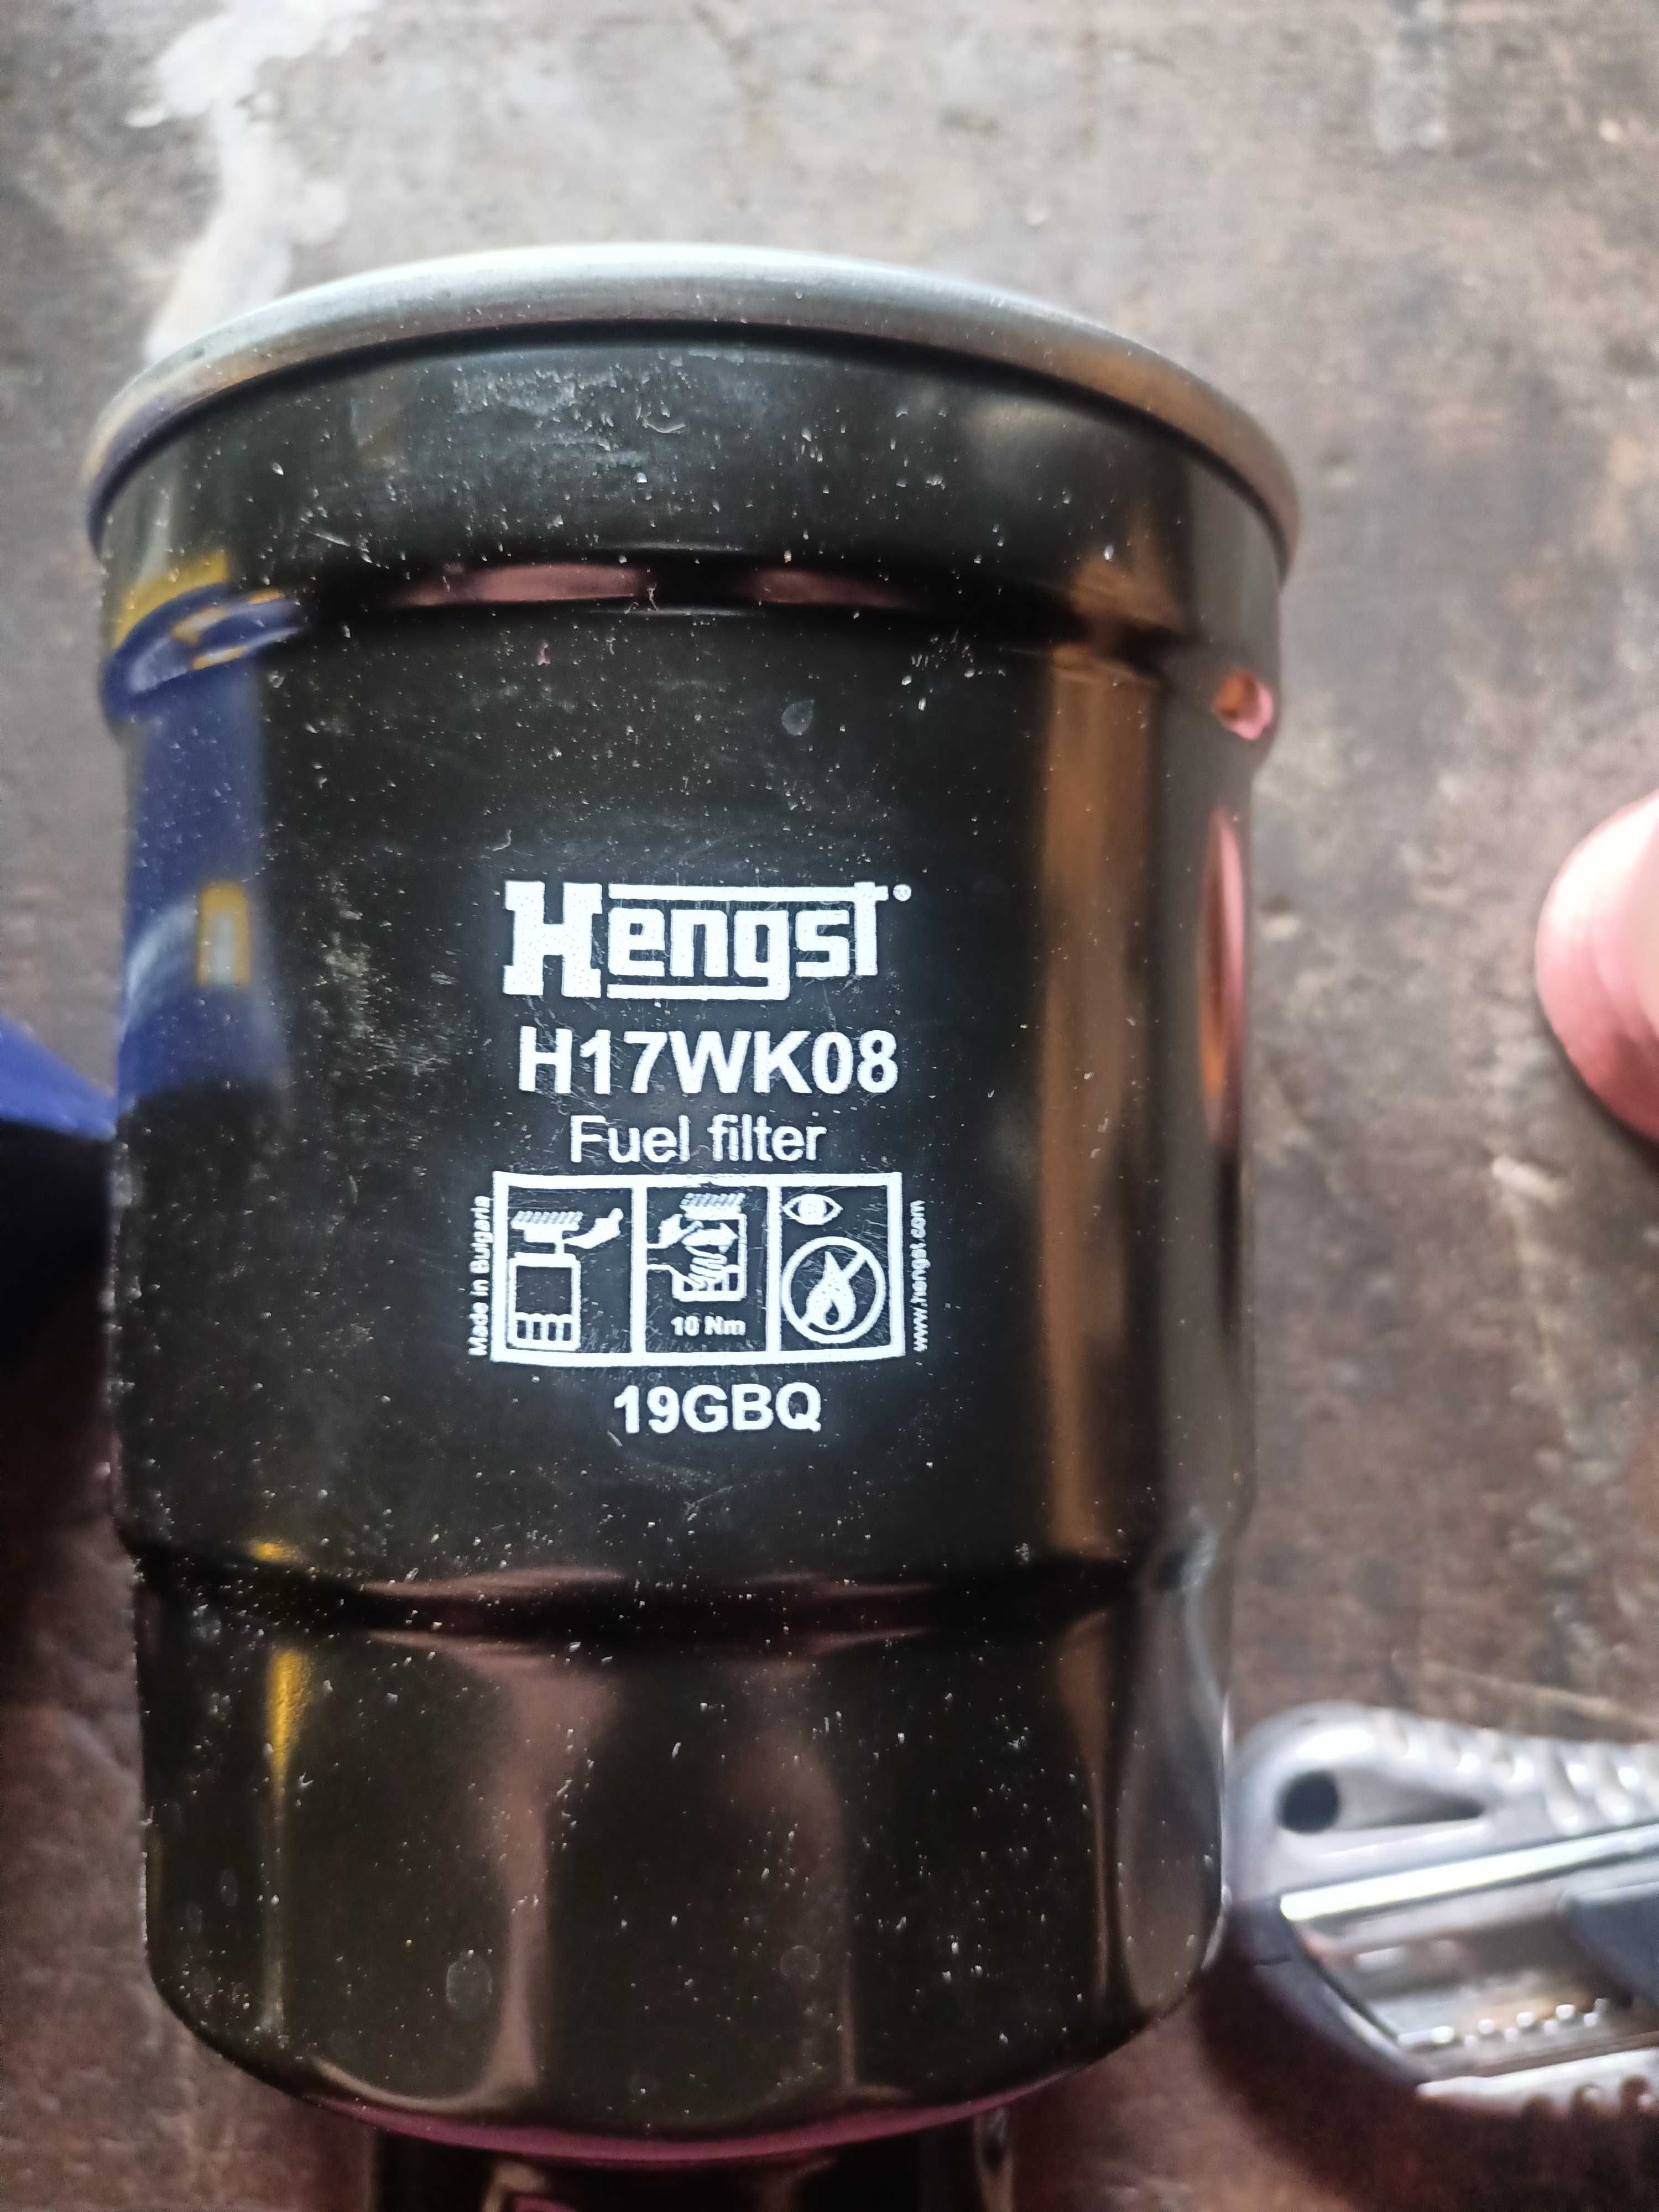 Nowy filtr paliwa H17wk08